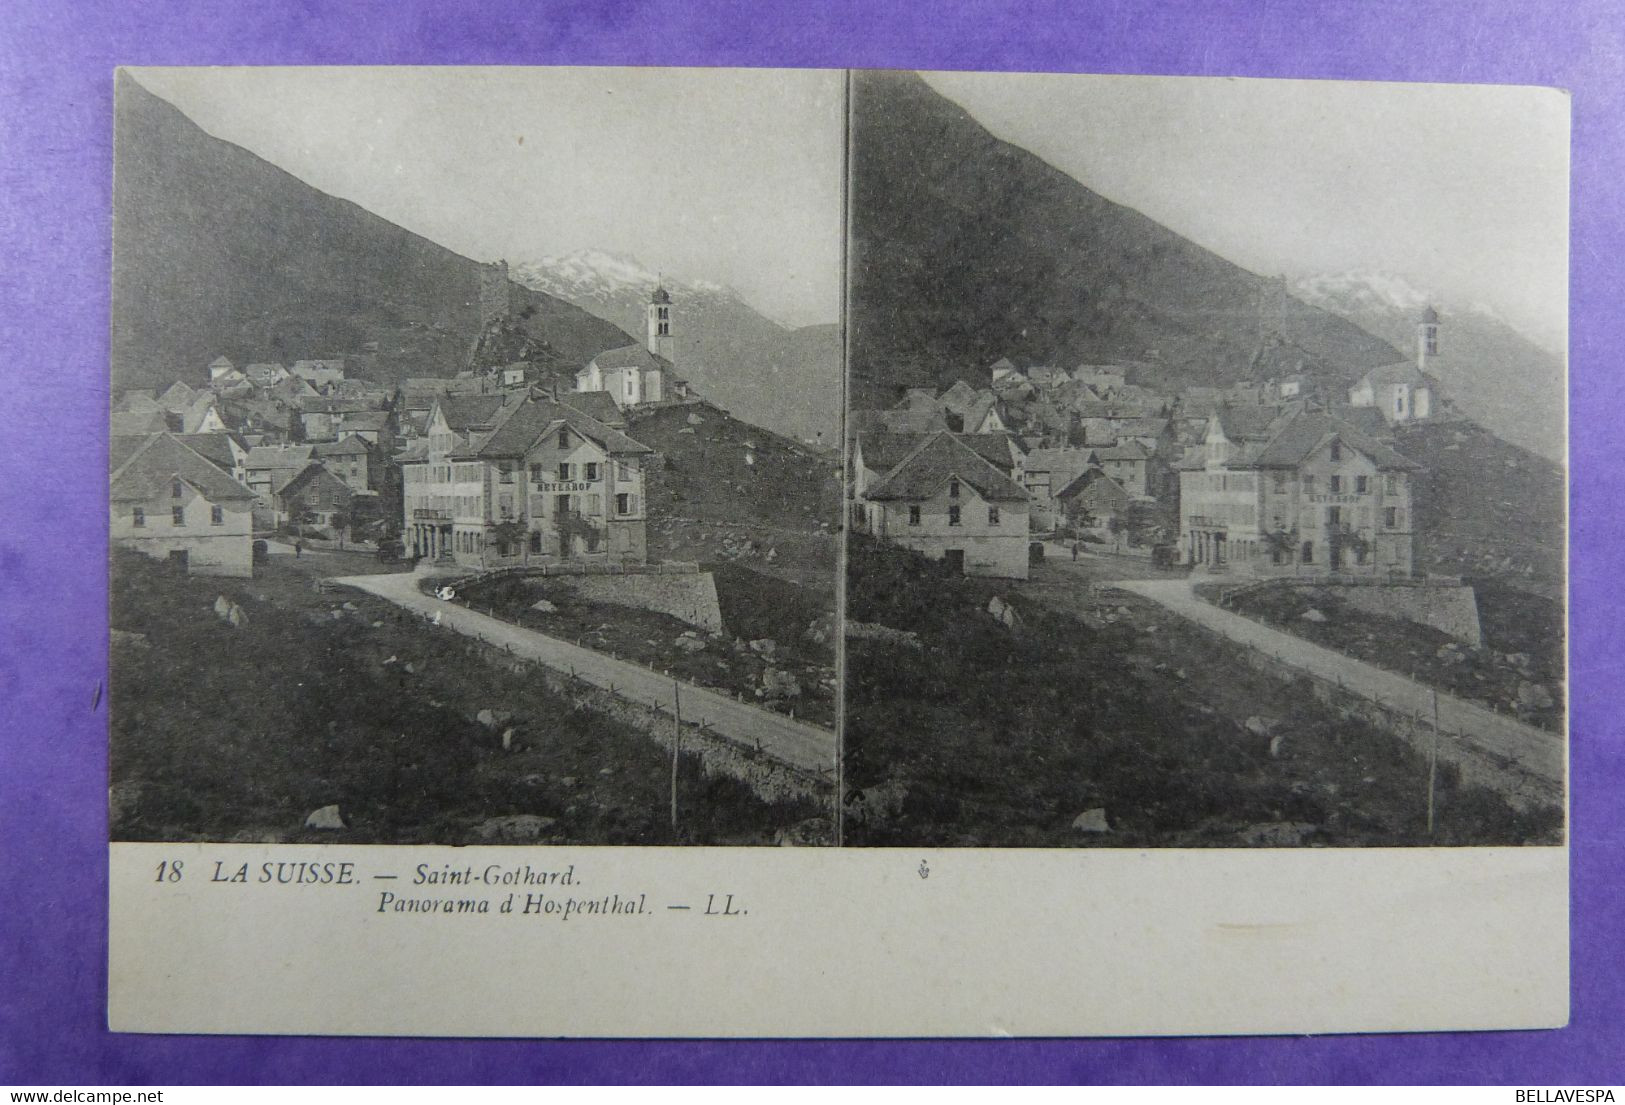 Cpa Stéréoscopique St Gothard Hospenthal Chemin De Fer De La Jungfrau - Station De La Petite Scheideck. N°11 L.L. & 18 - Stereoskopie